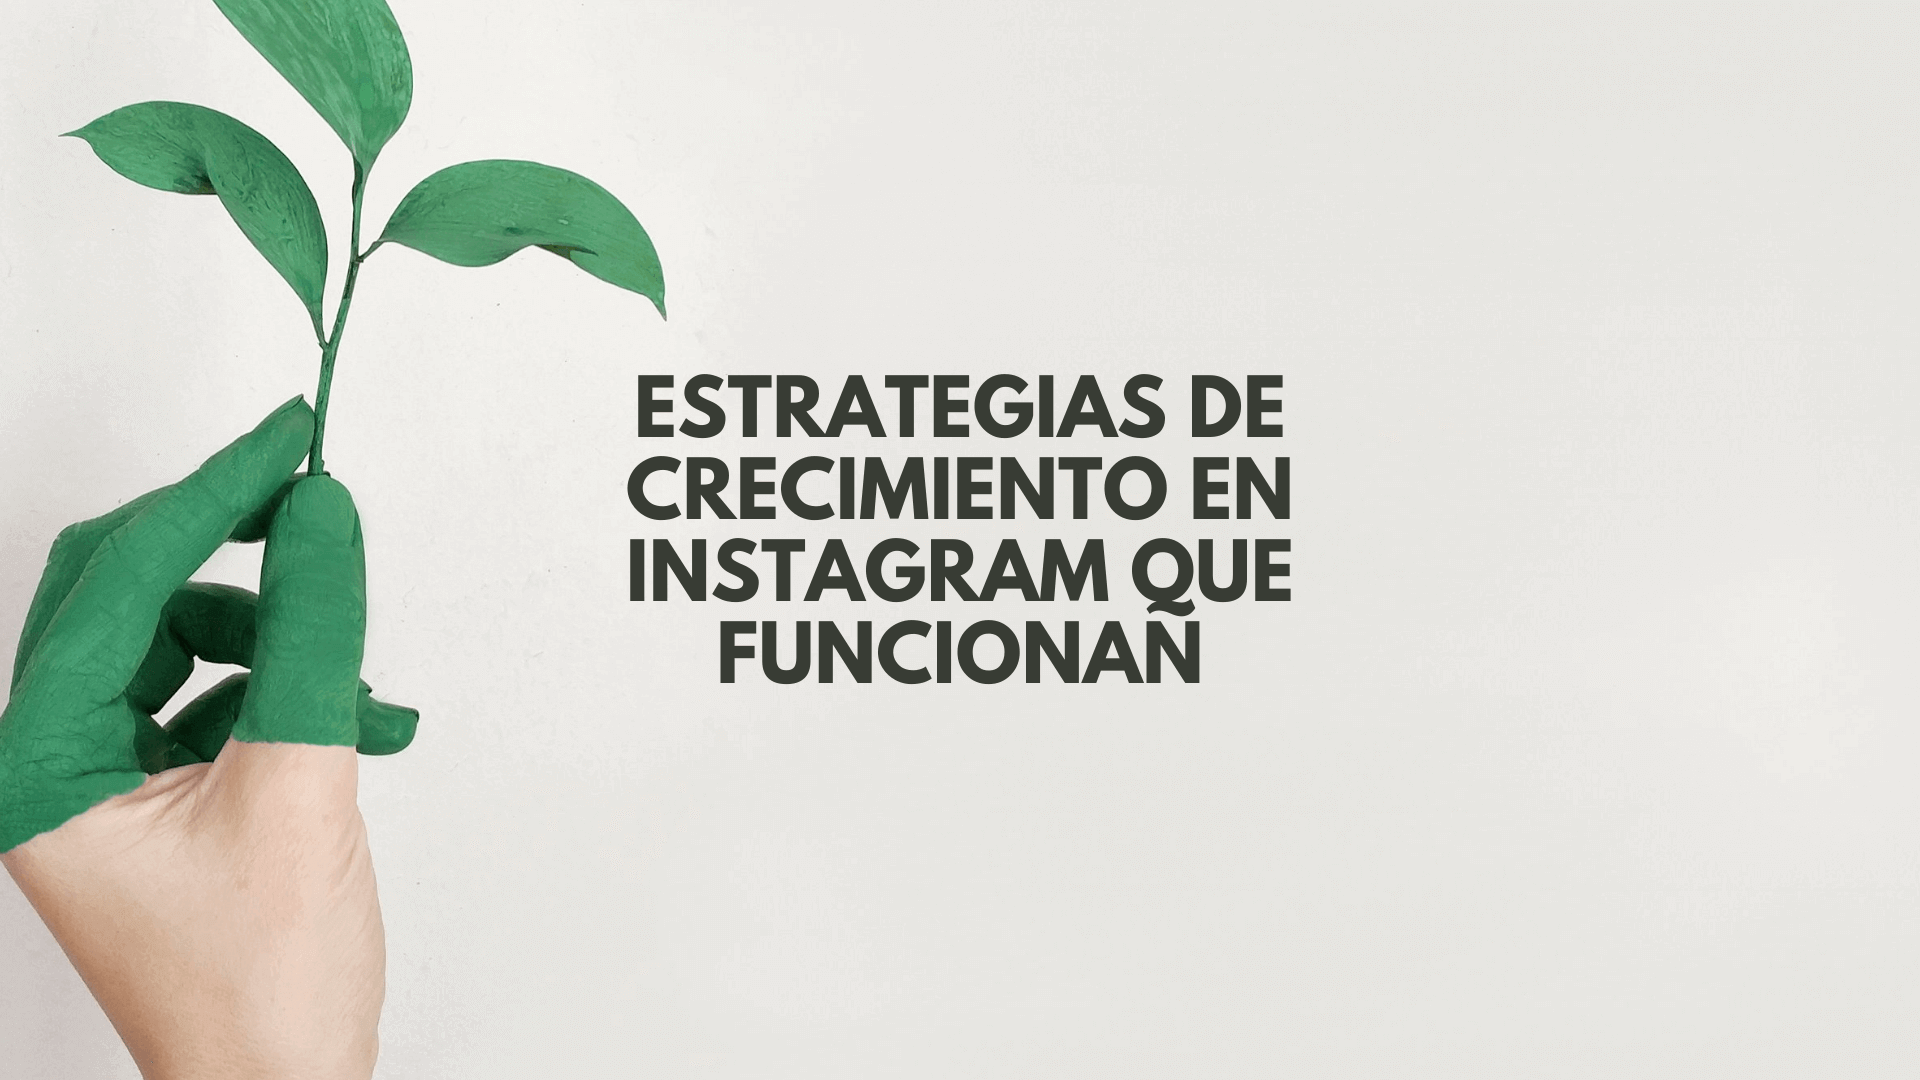 Estrategias de crecimiento en Instagram: pasos y claves para lograrlo